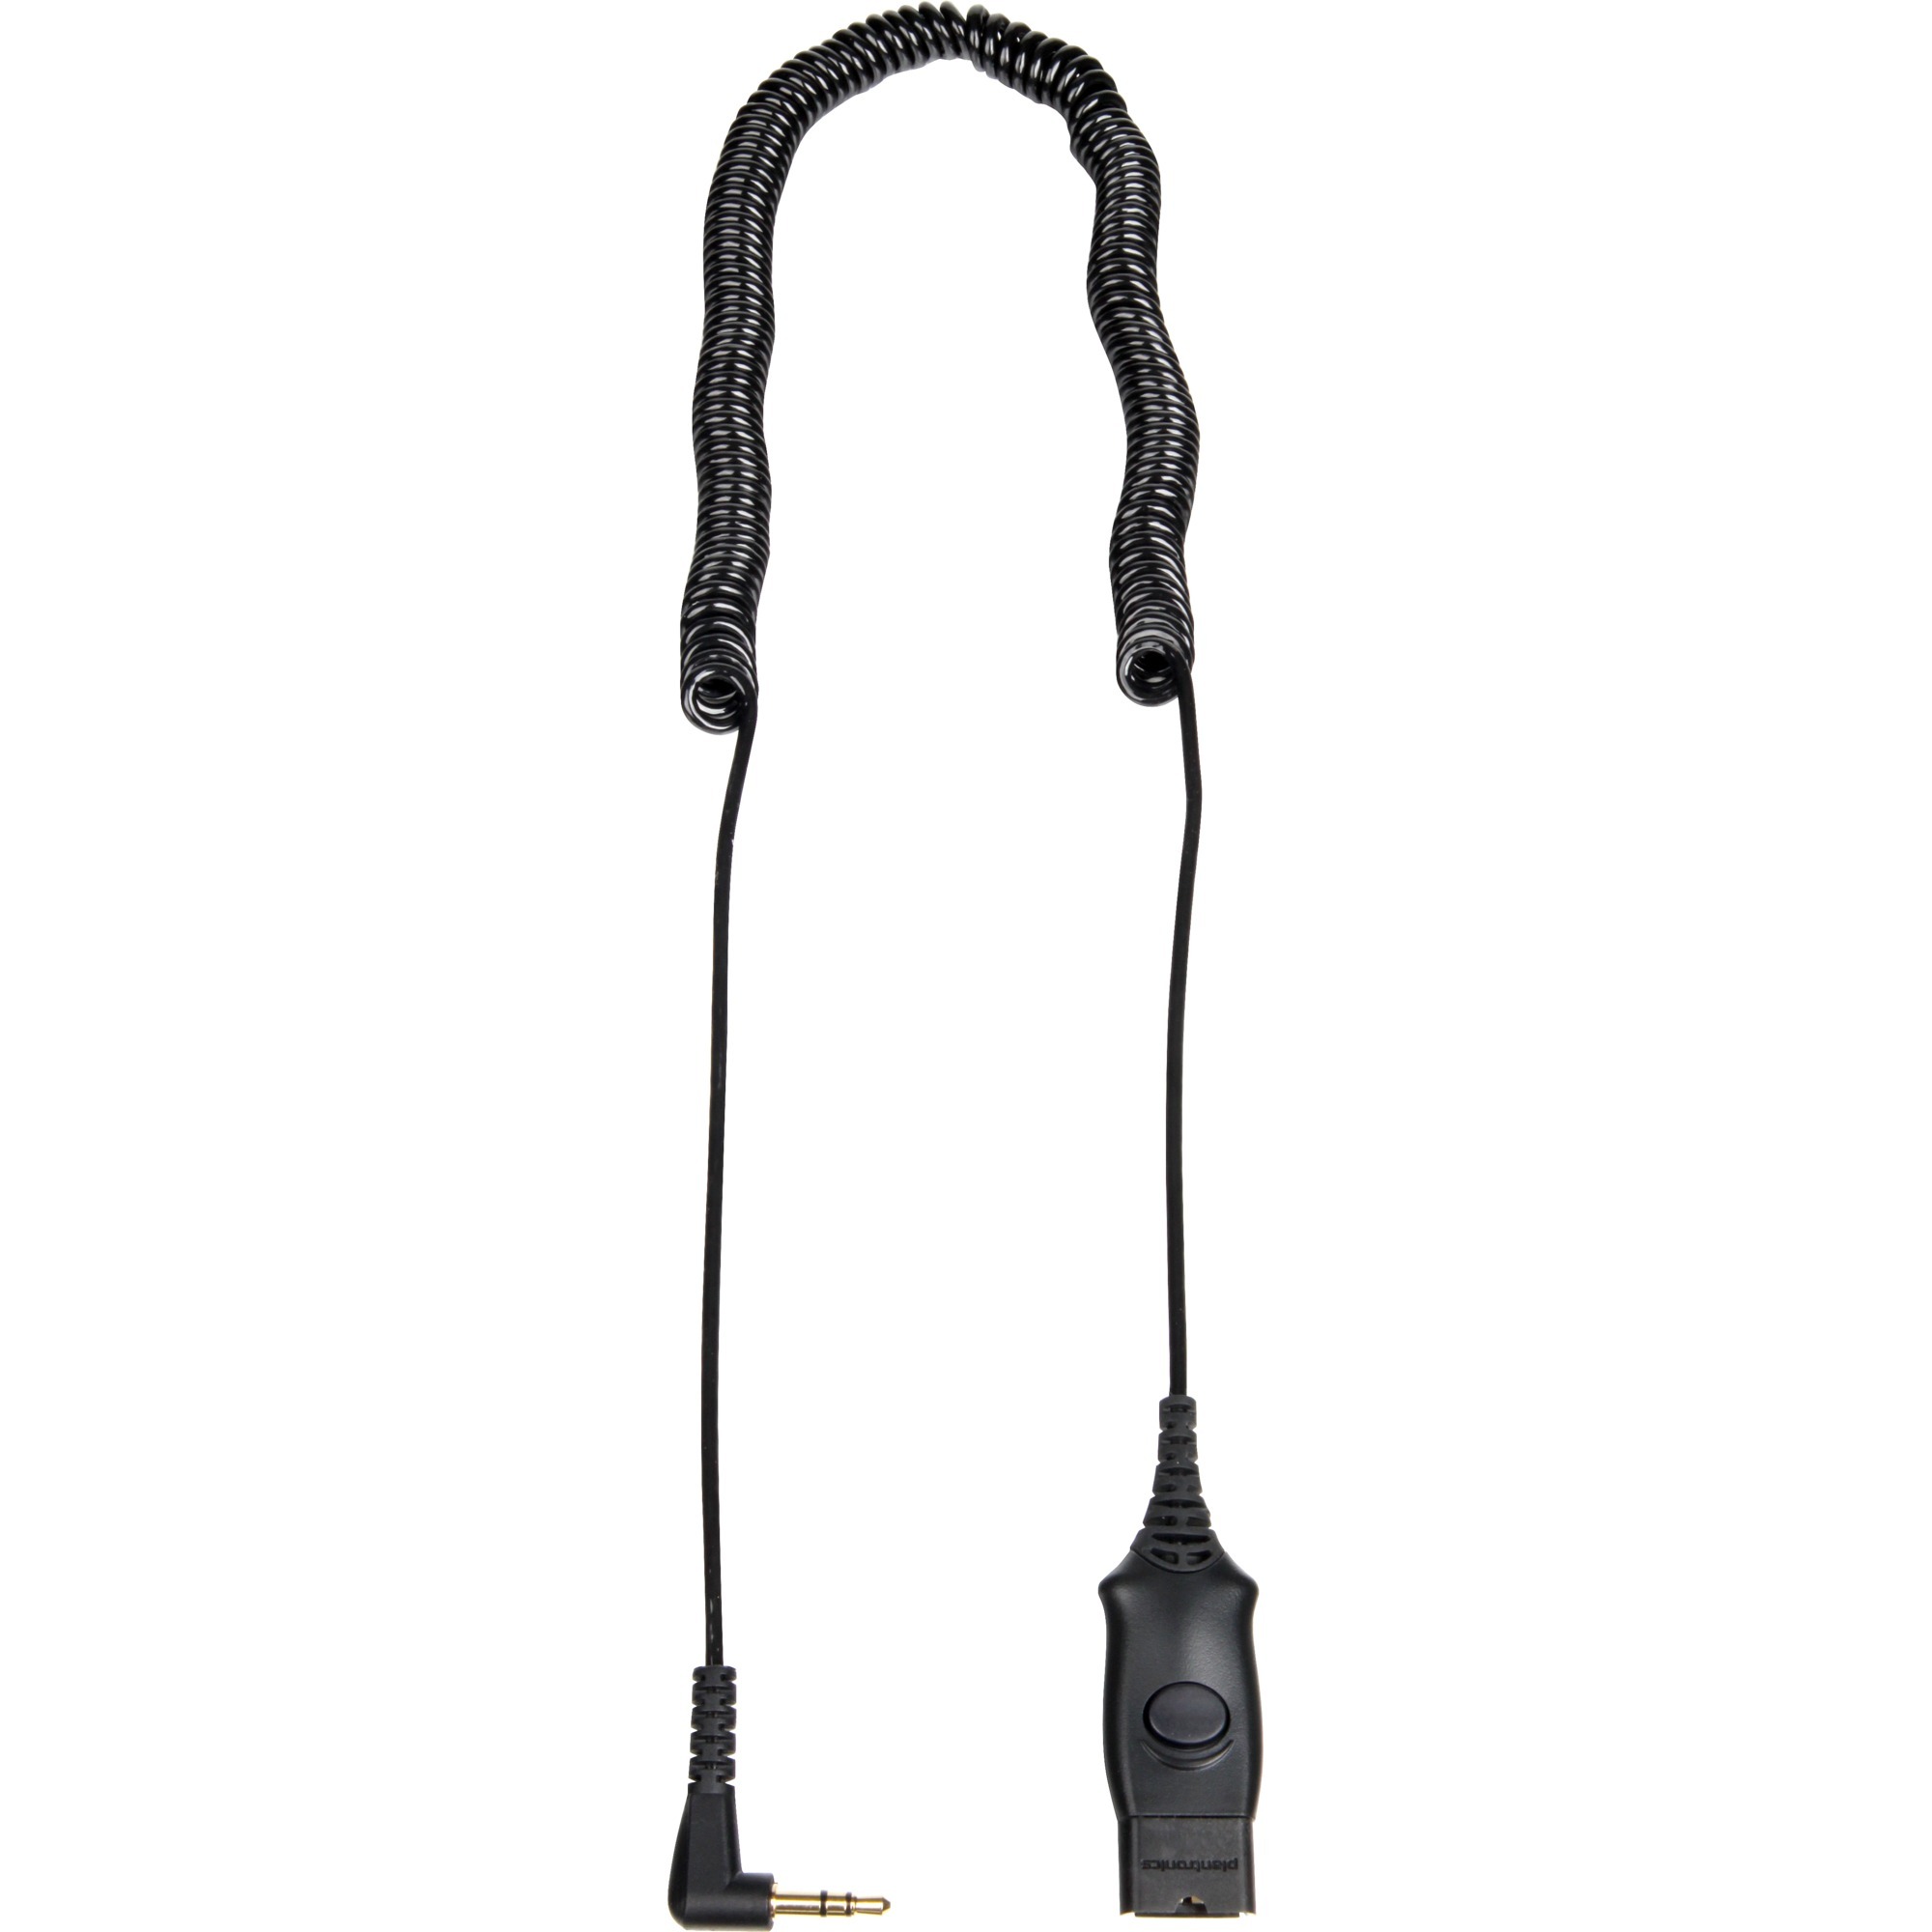 Image of Alternate - Adapterkabel 3,5mm Klinke QD (38324-01) online einkaufen bei Alternate